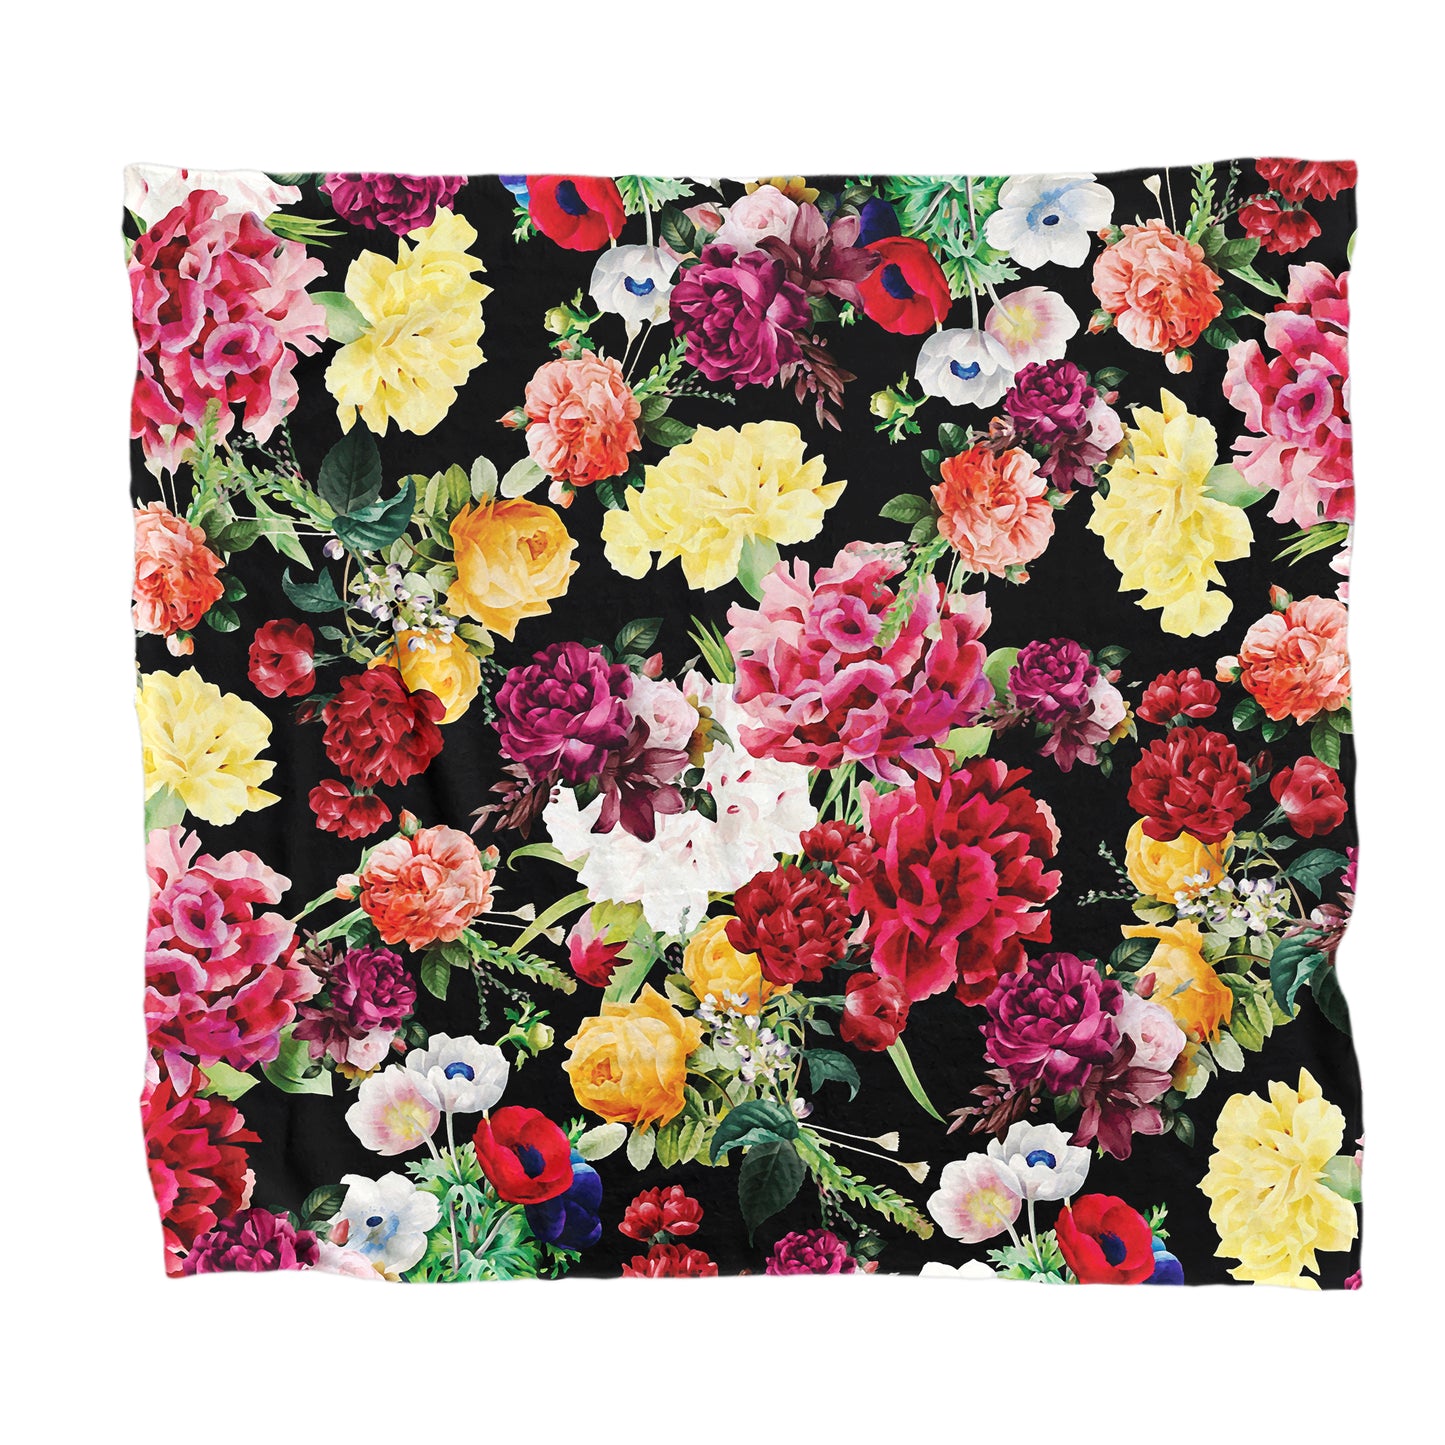 Floral Mix on Black Light Weight Fleece Blanket By Mark van Vuuren